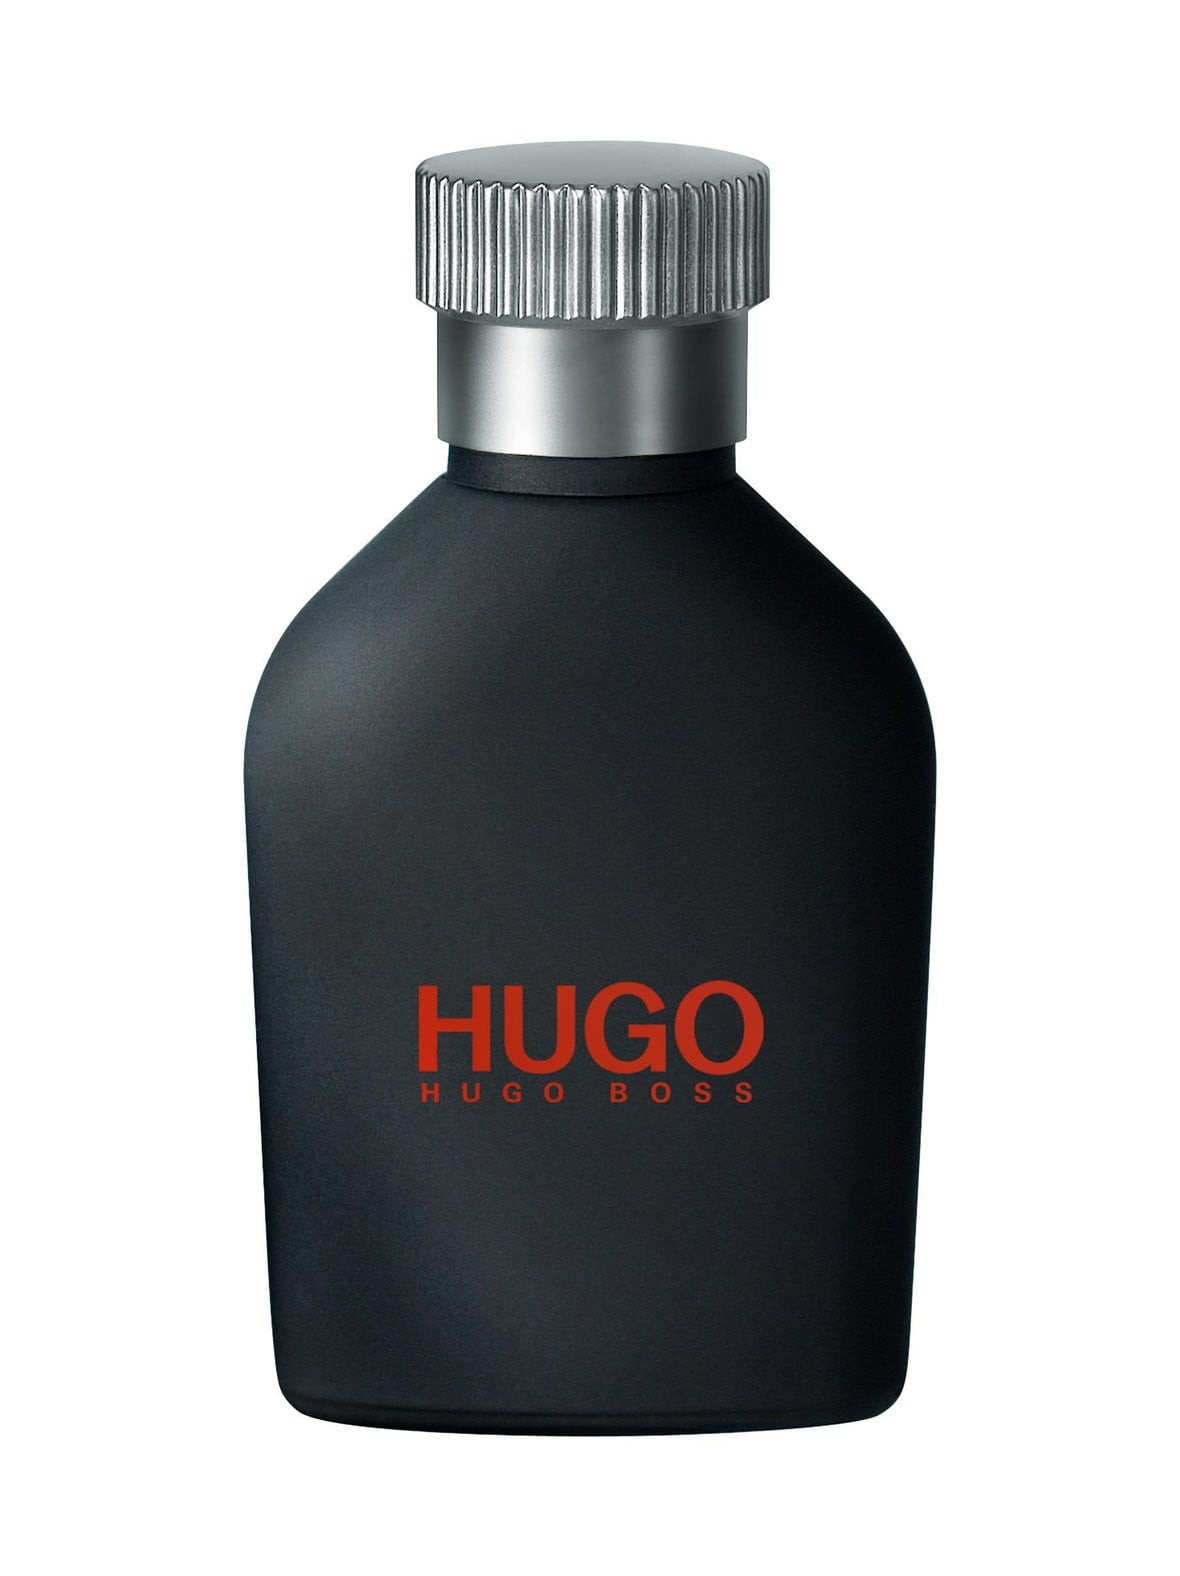 Hugo мужская туалетная вода. Hugo Boss just different 40 ml. Hugo Boss just different 125 мл. Туалетная вода Hugo Boss 40 ml. Туалетная вода Hugo Boss мужская 40ml.